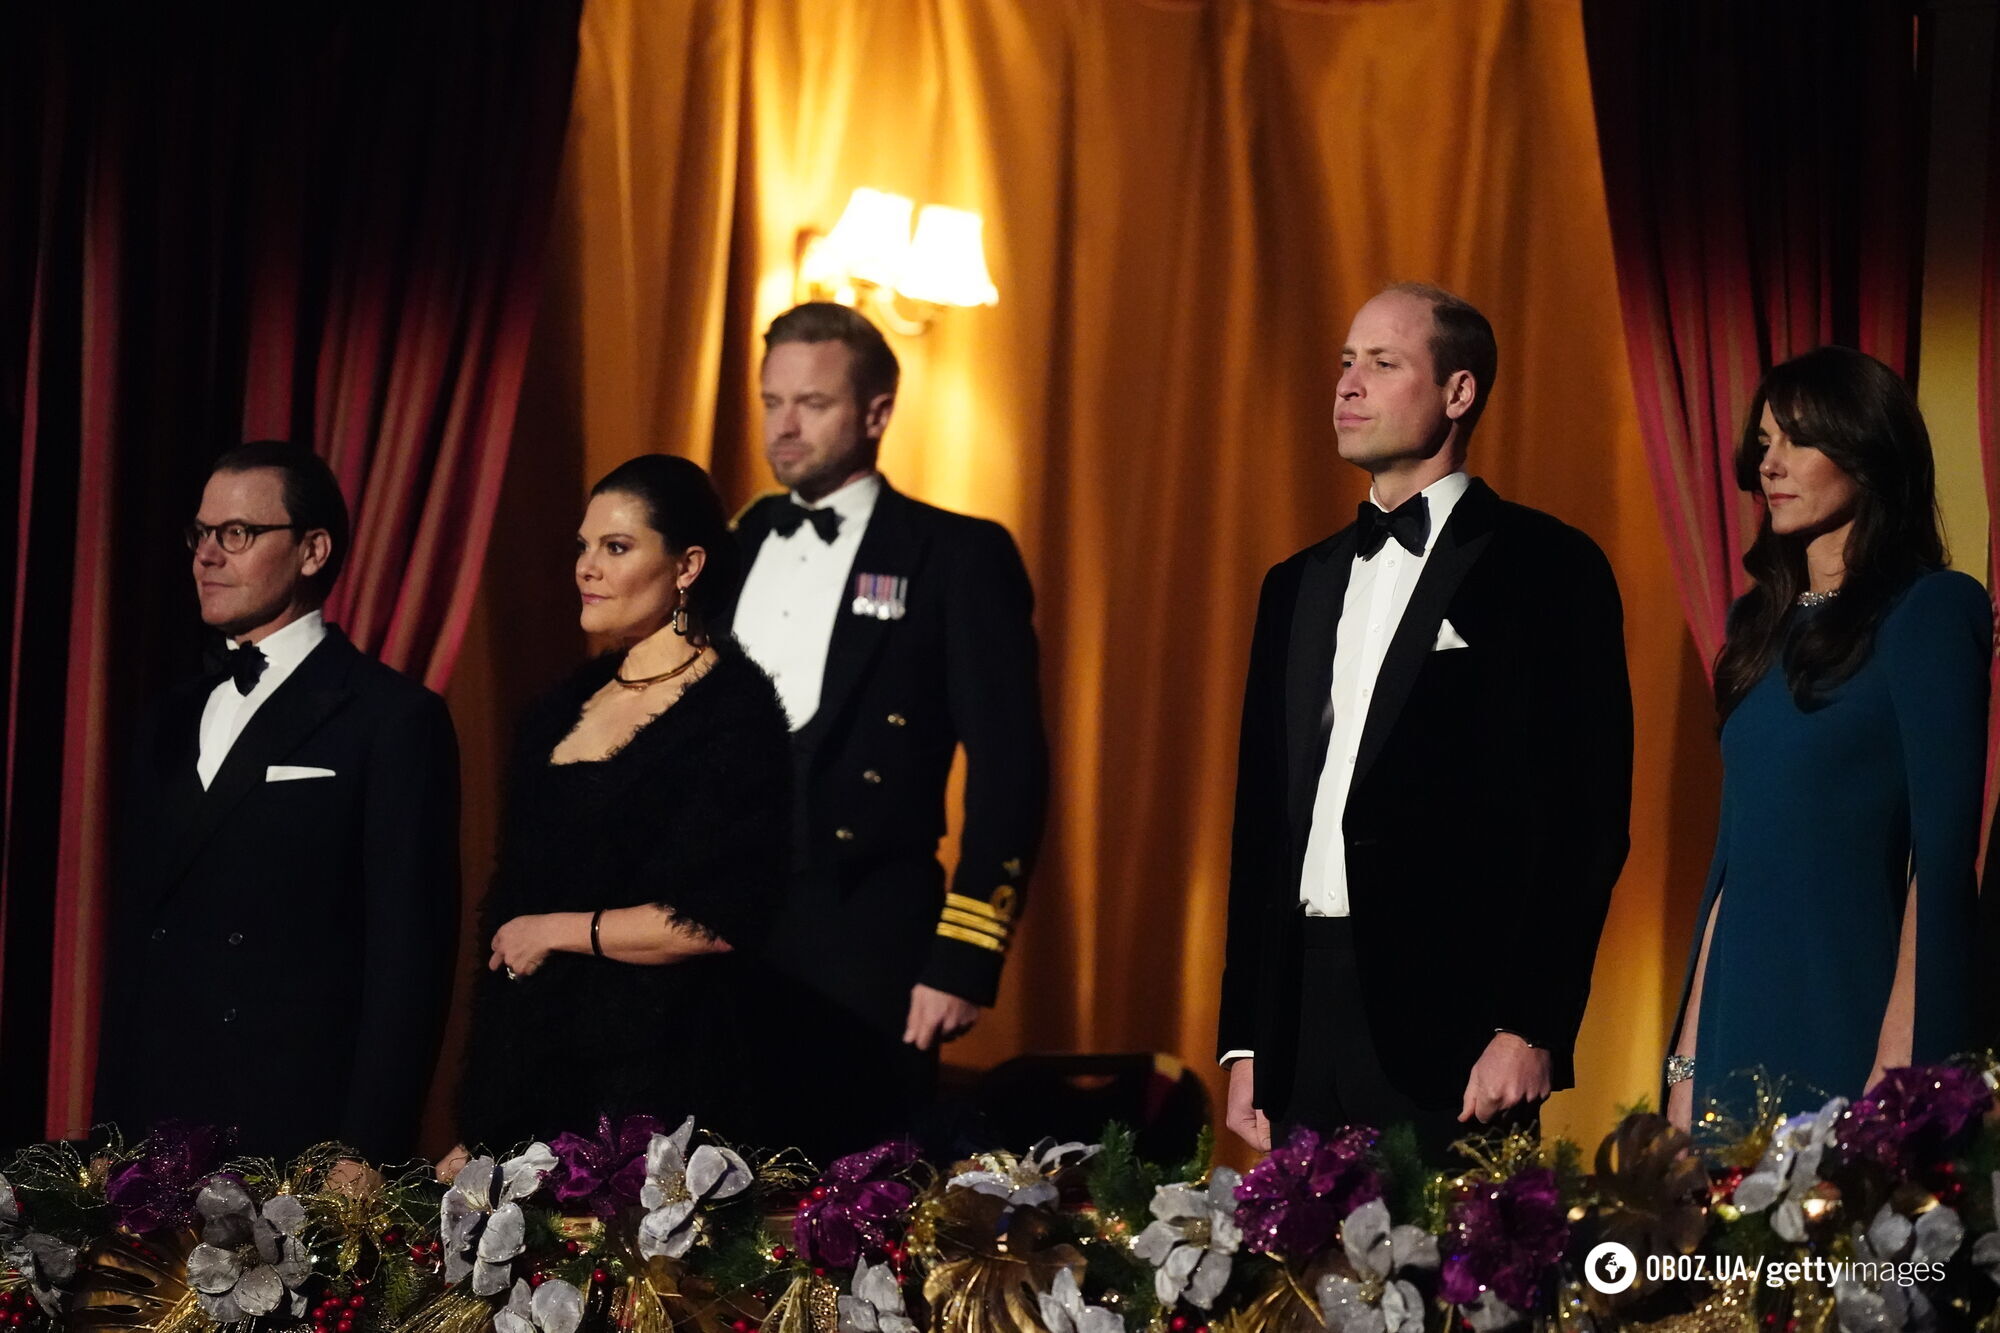 Кейт Миддлтон и принц Уильям проигнорировали будущих короля и королеву Швеции: неловкий момент попал на видео